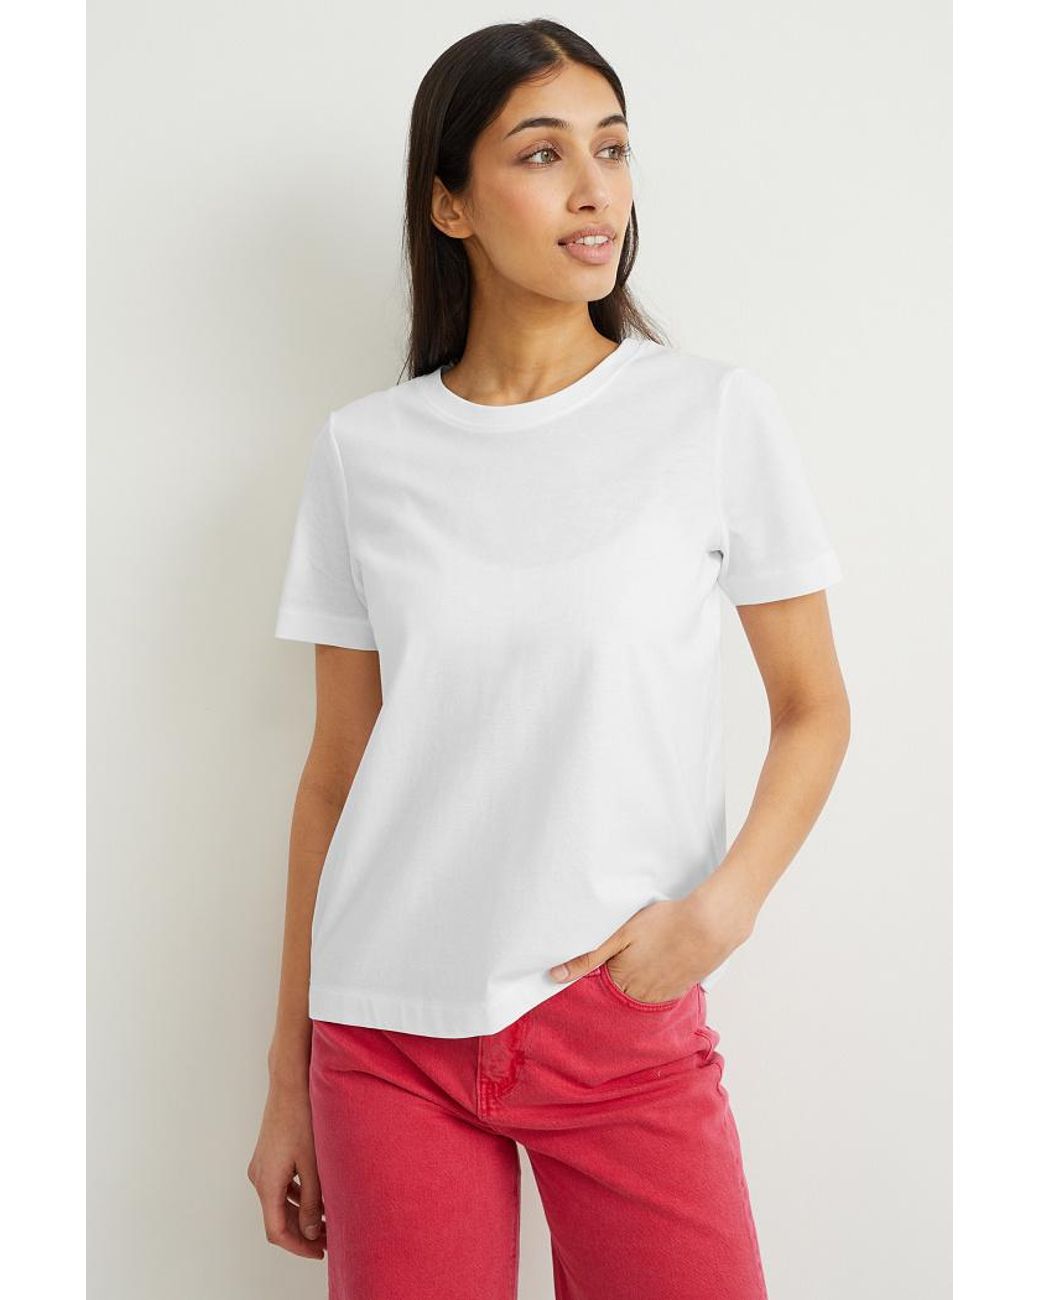 C&A Set Van 3-t-shirt in het Wit | Lyst BE